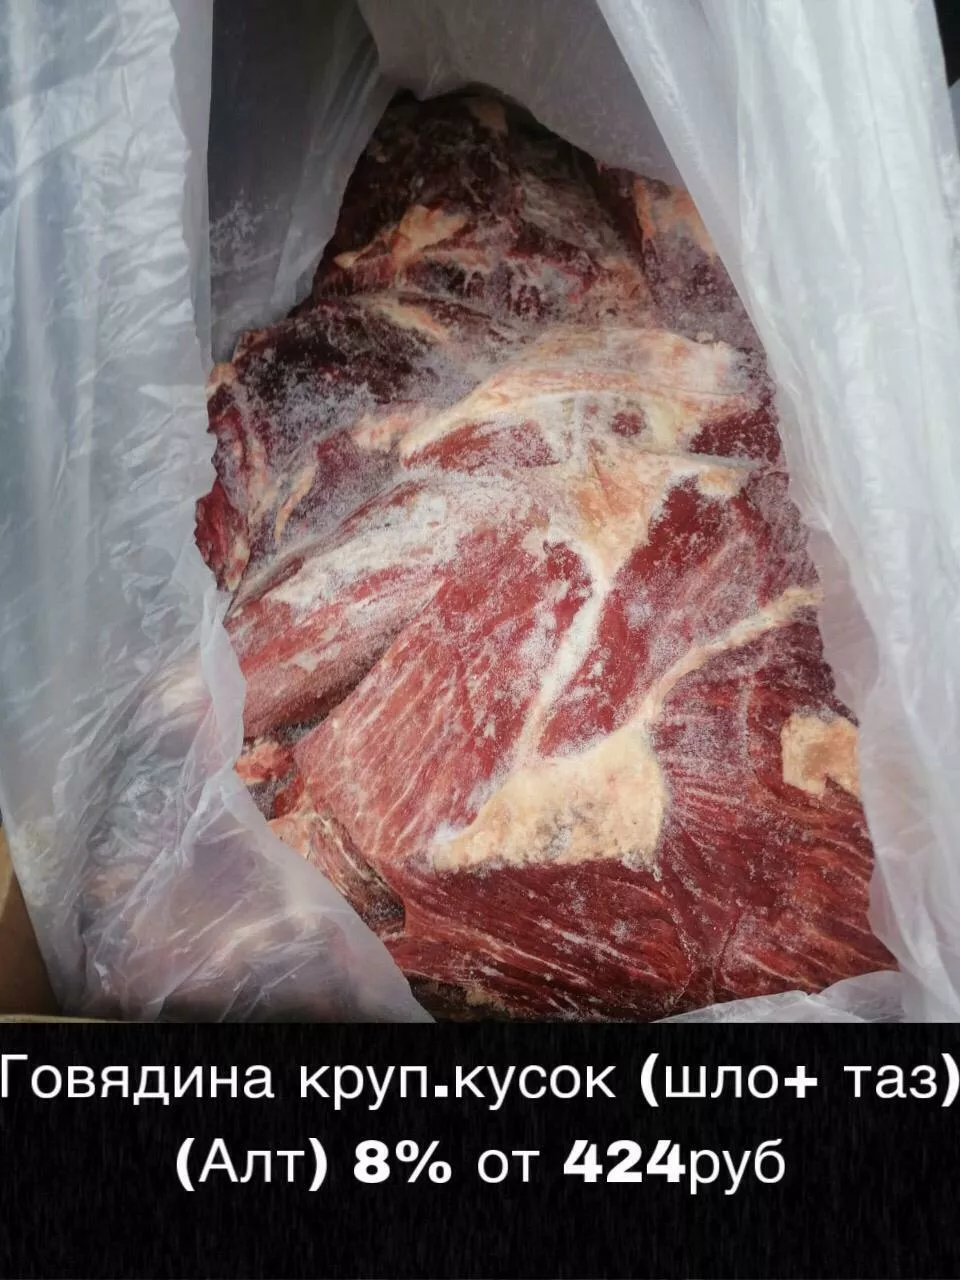 мясо - говядина и др. оптом! в Красноярске и Красноярском крае